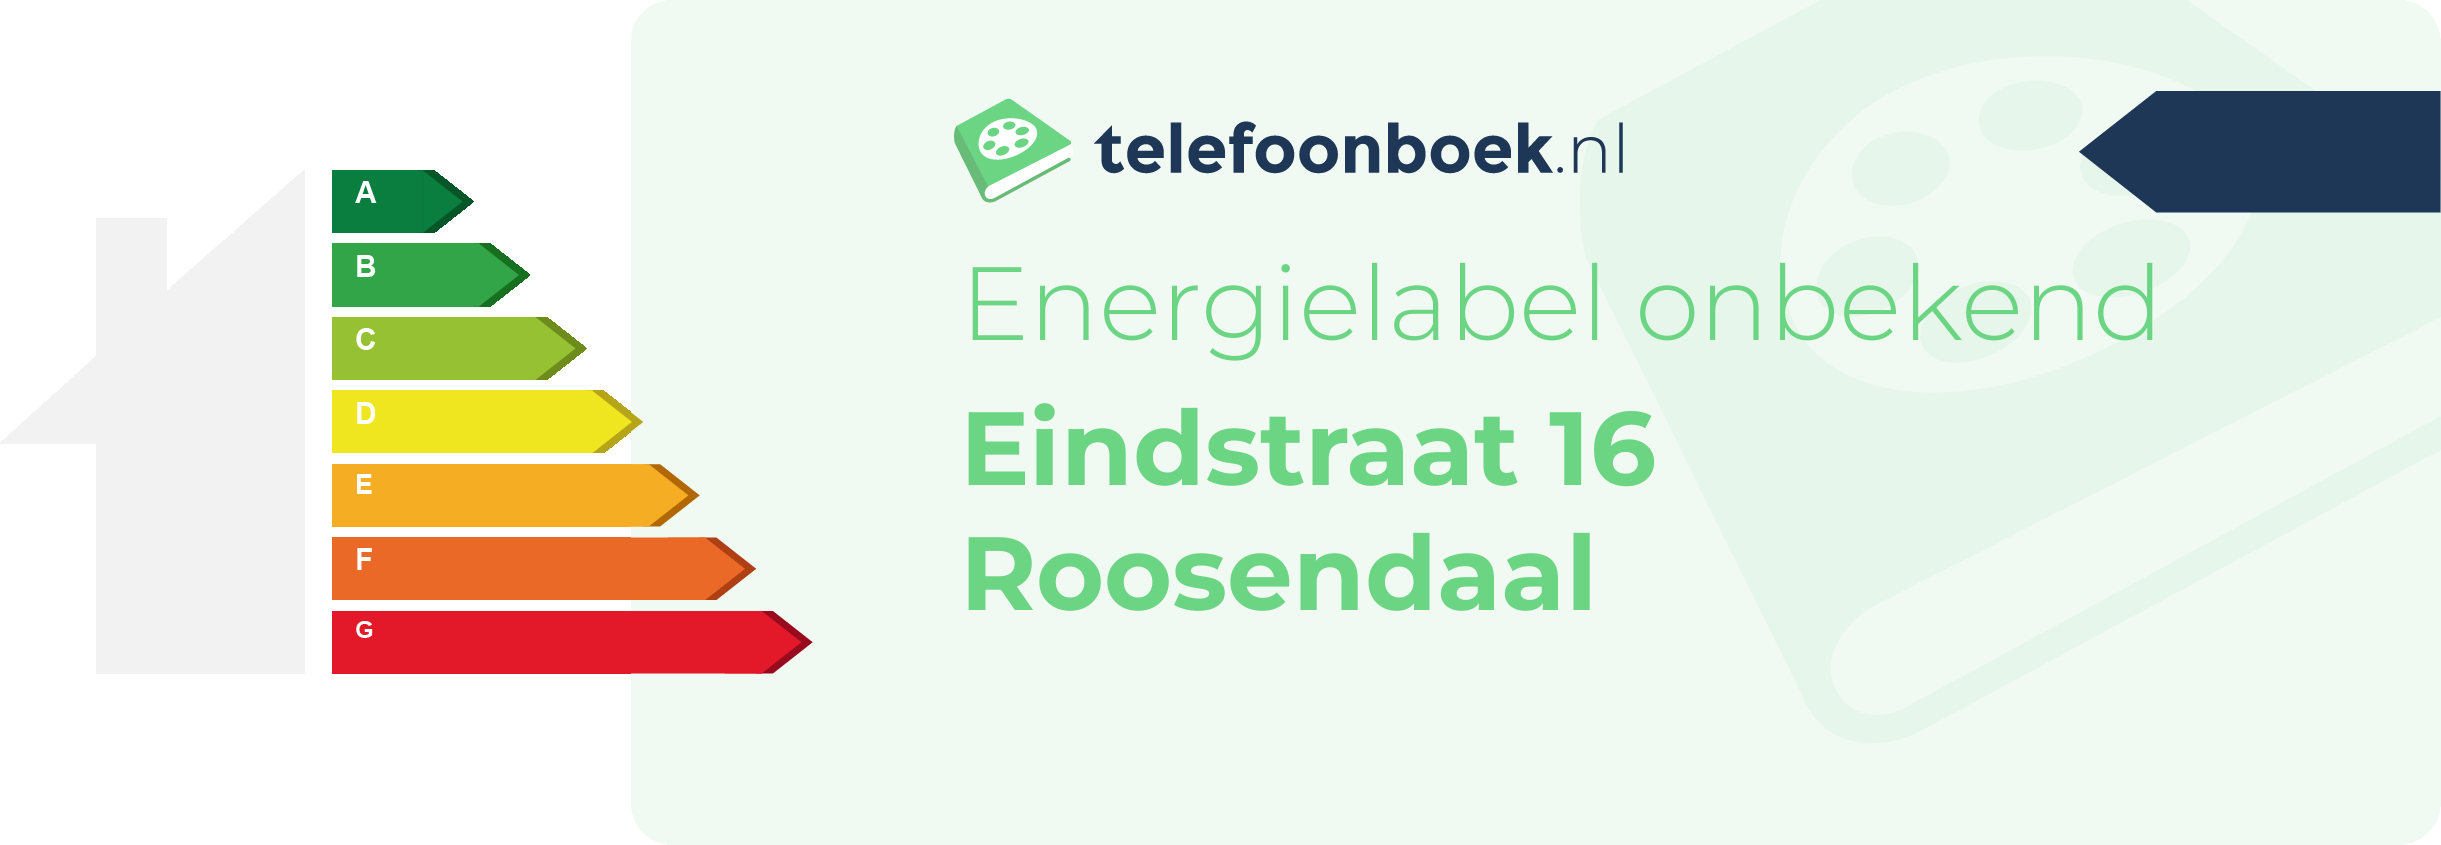 Energielabel Eindstraat 16 Roosendaal